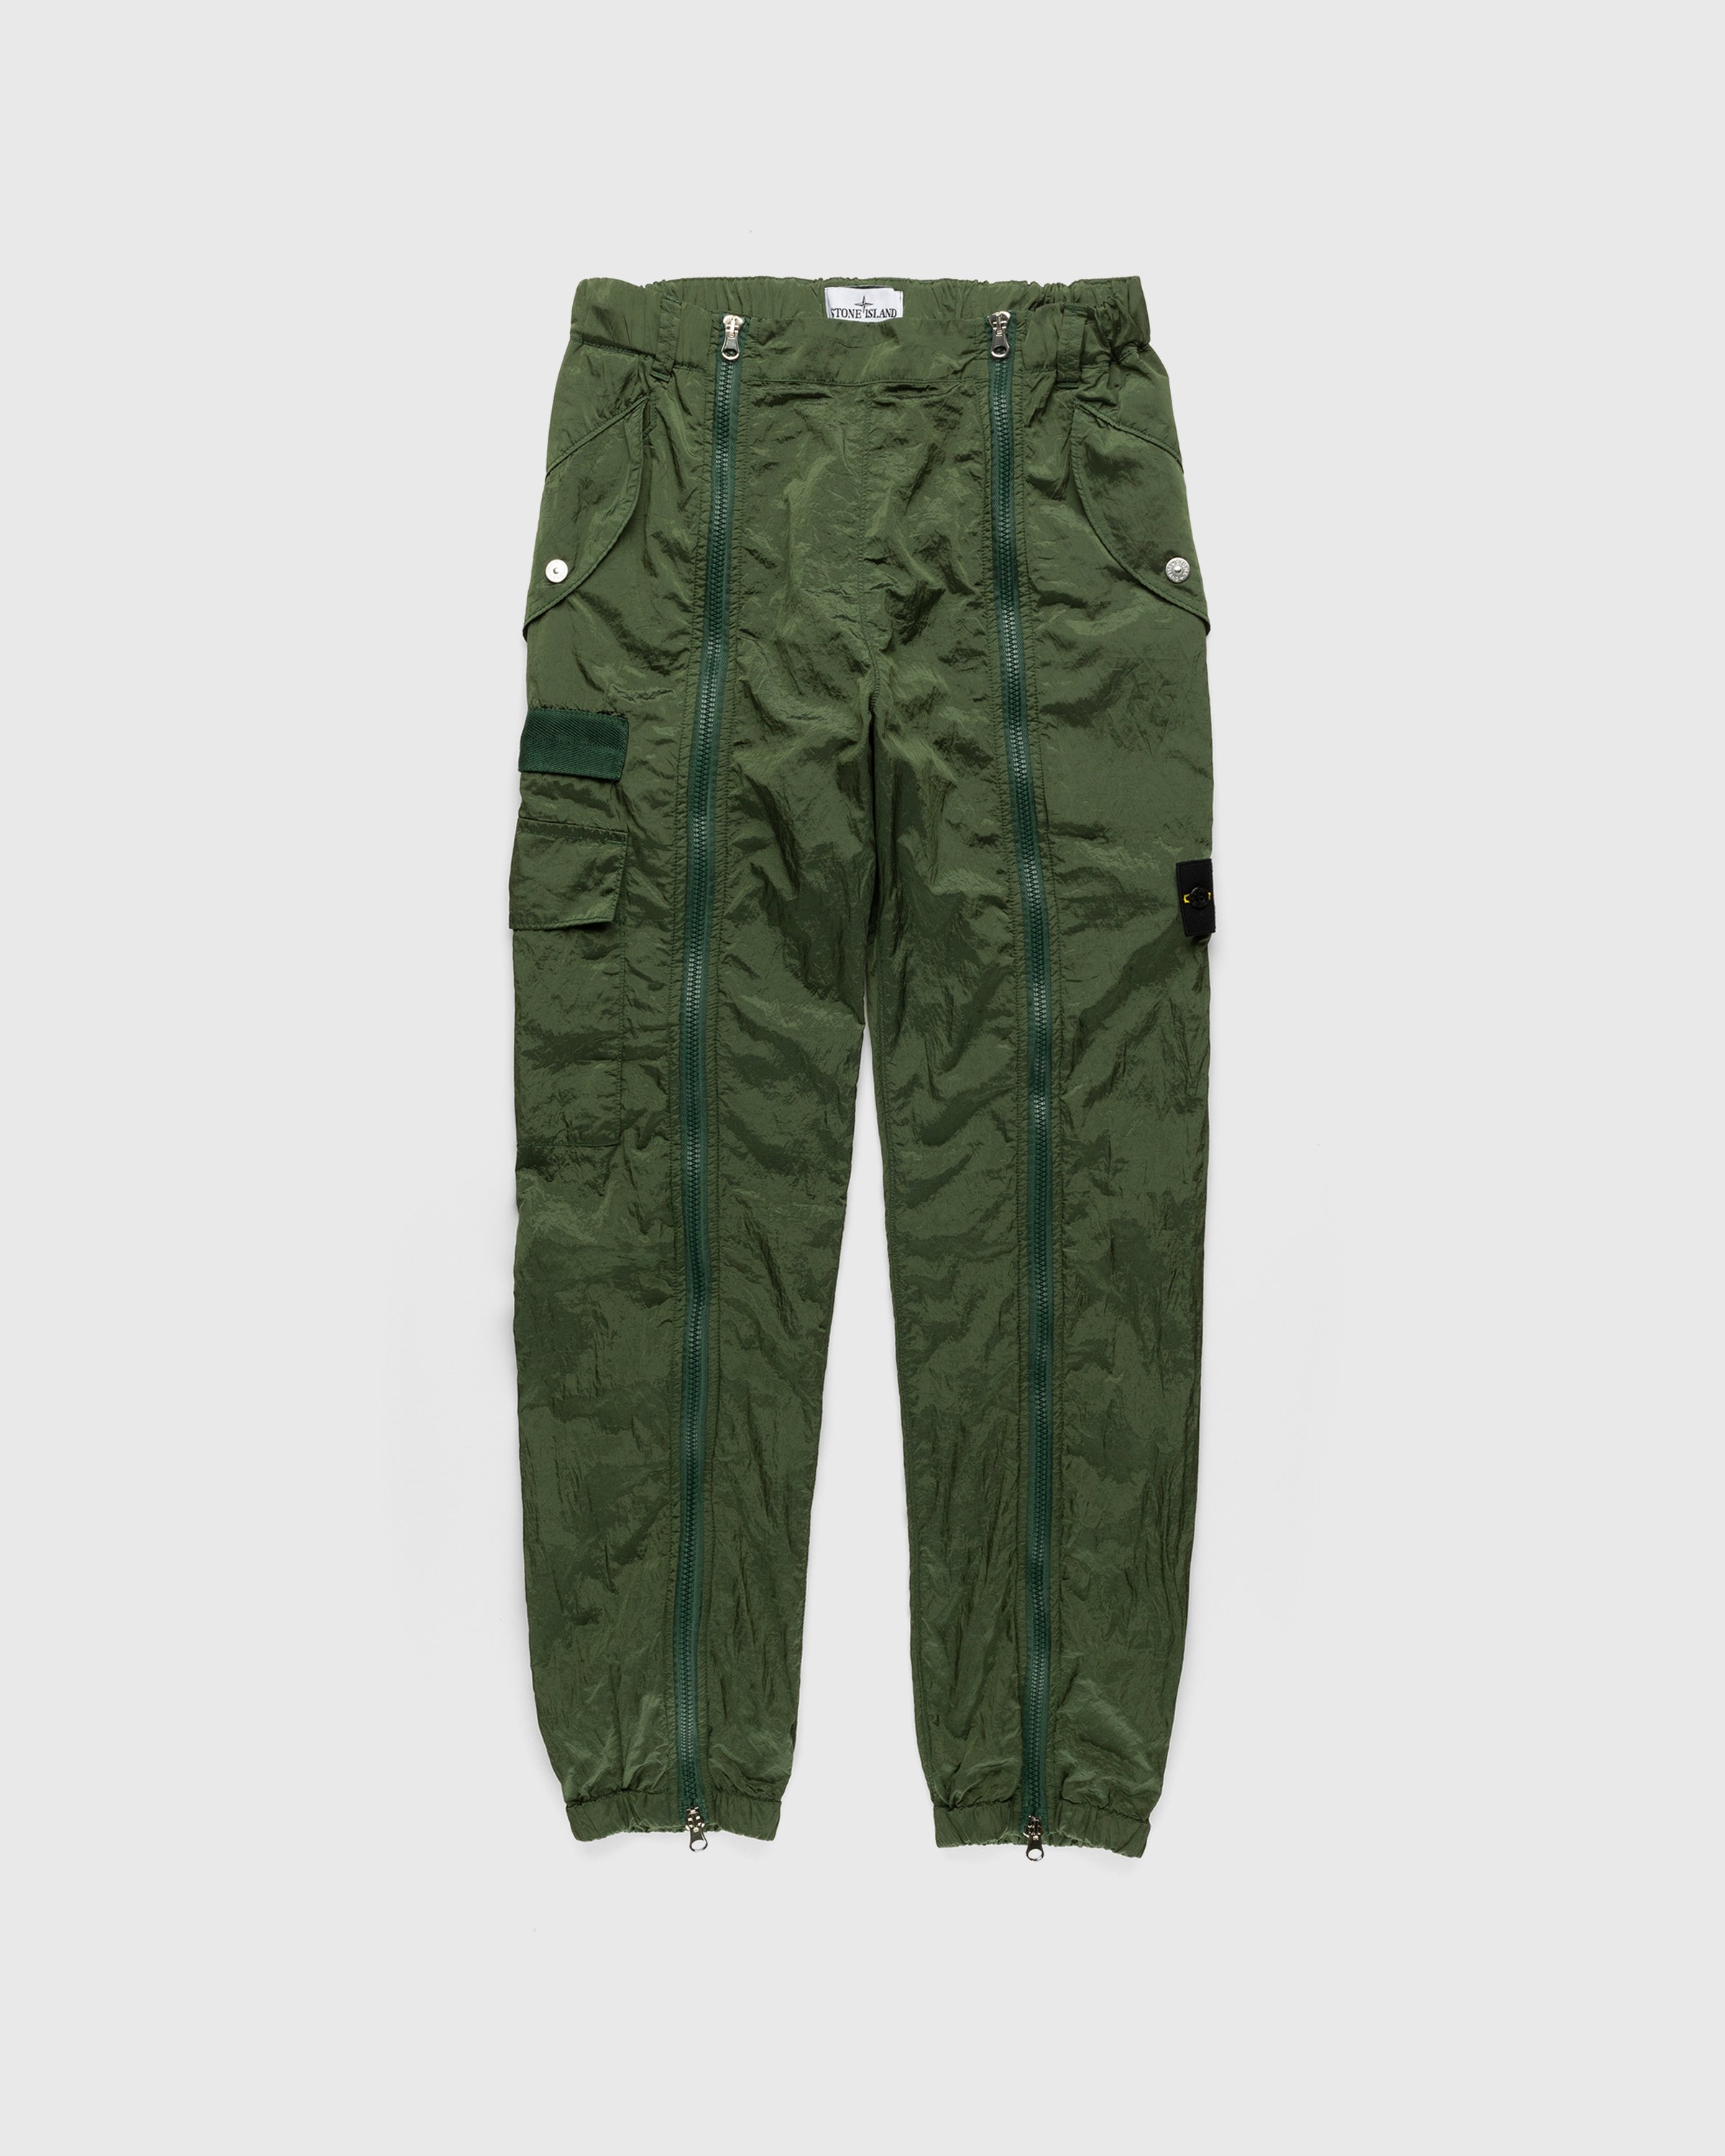 Stone Island - Nylon Metal Cargo Pants Olive - Clothing - Green - Image 1